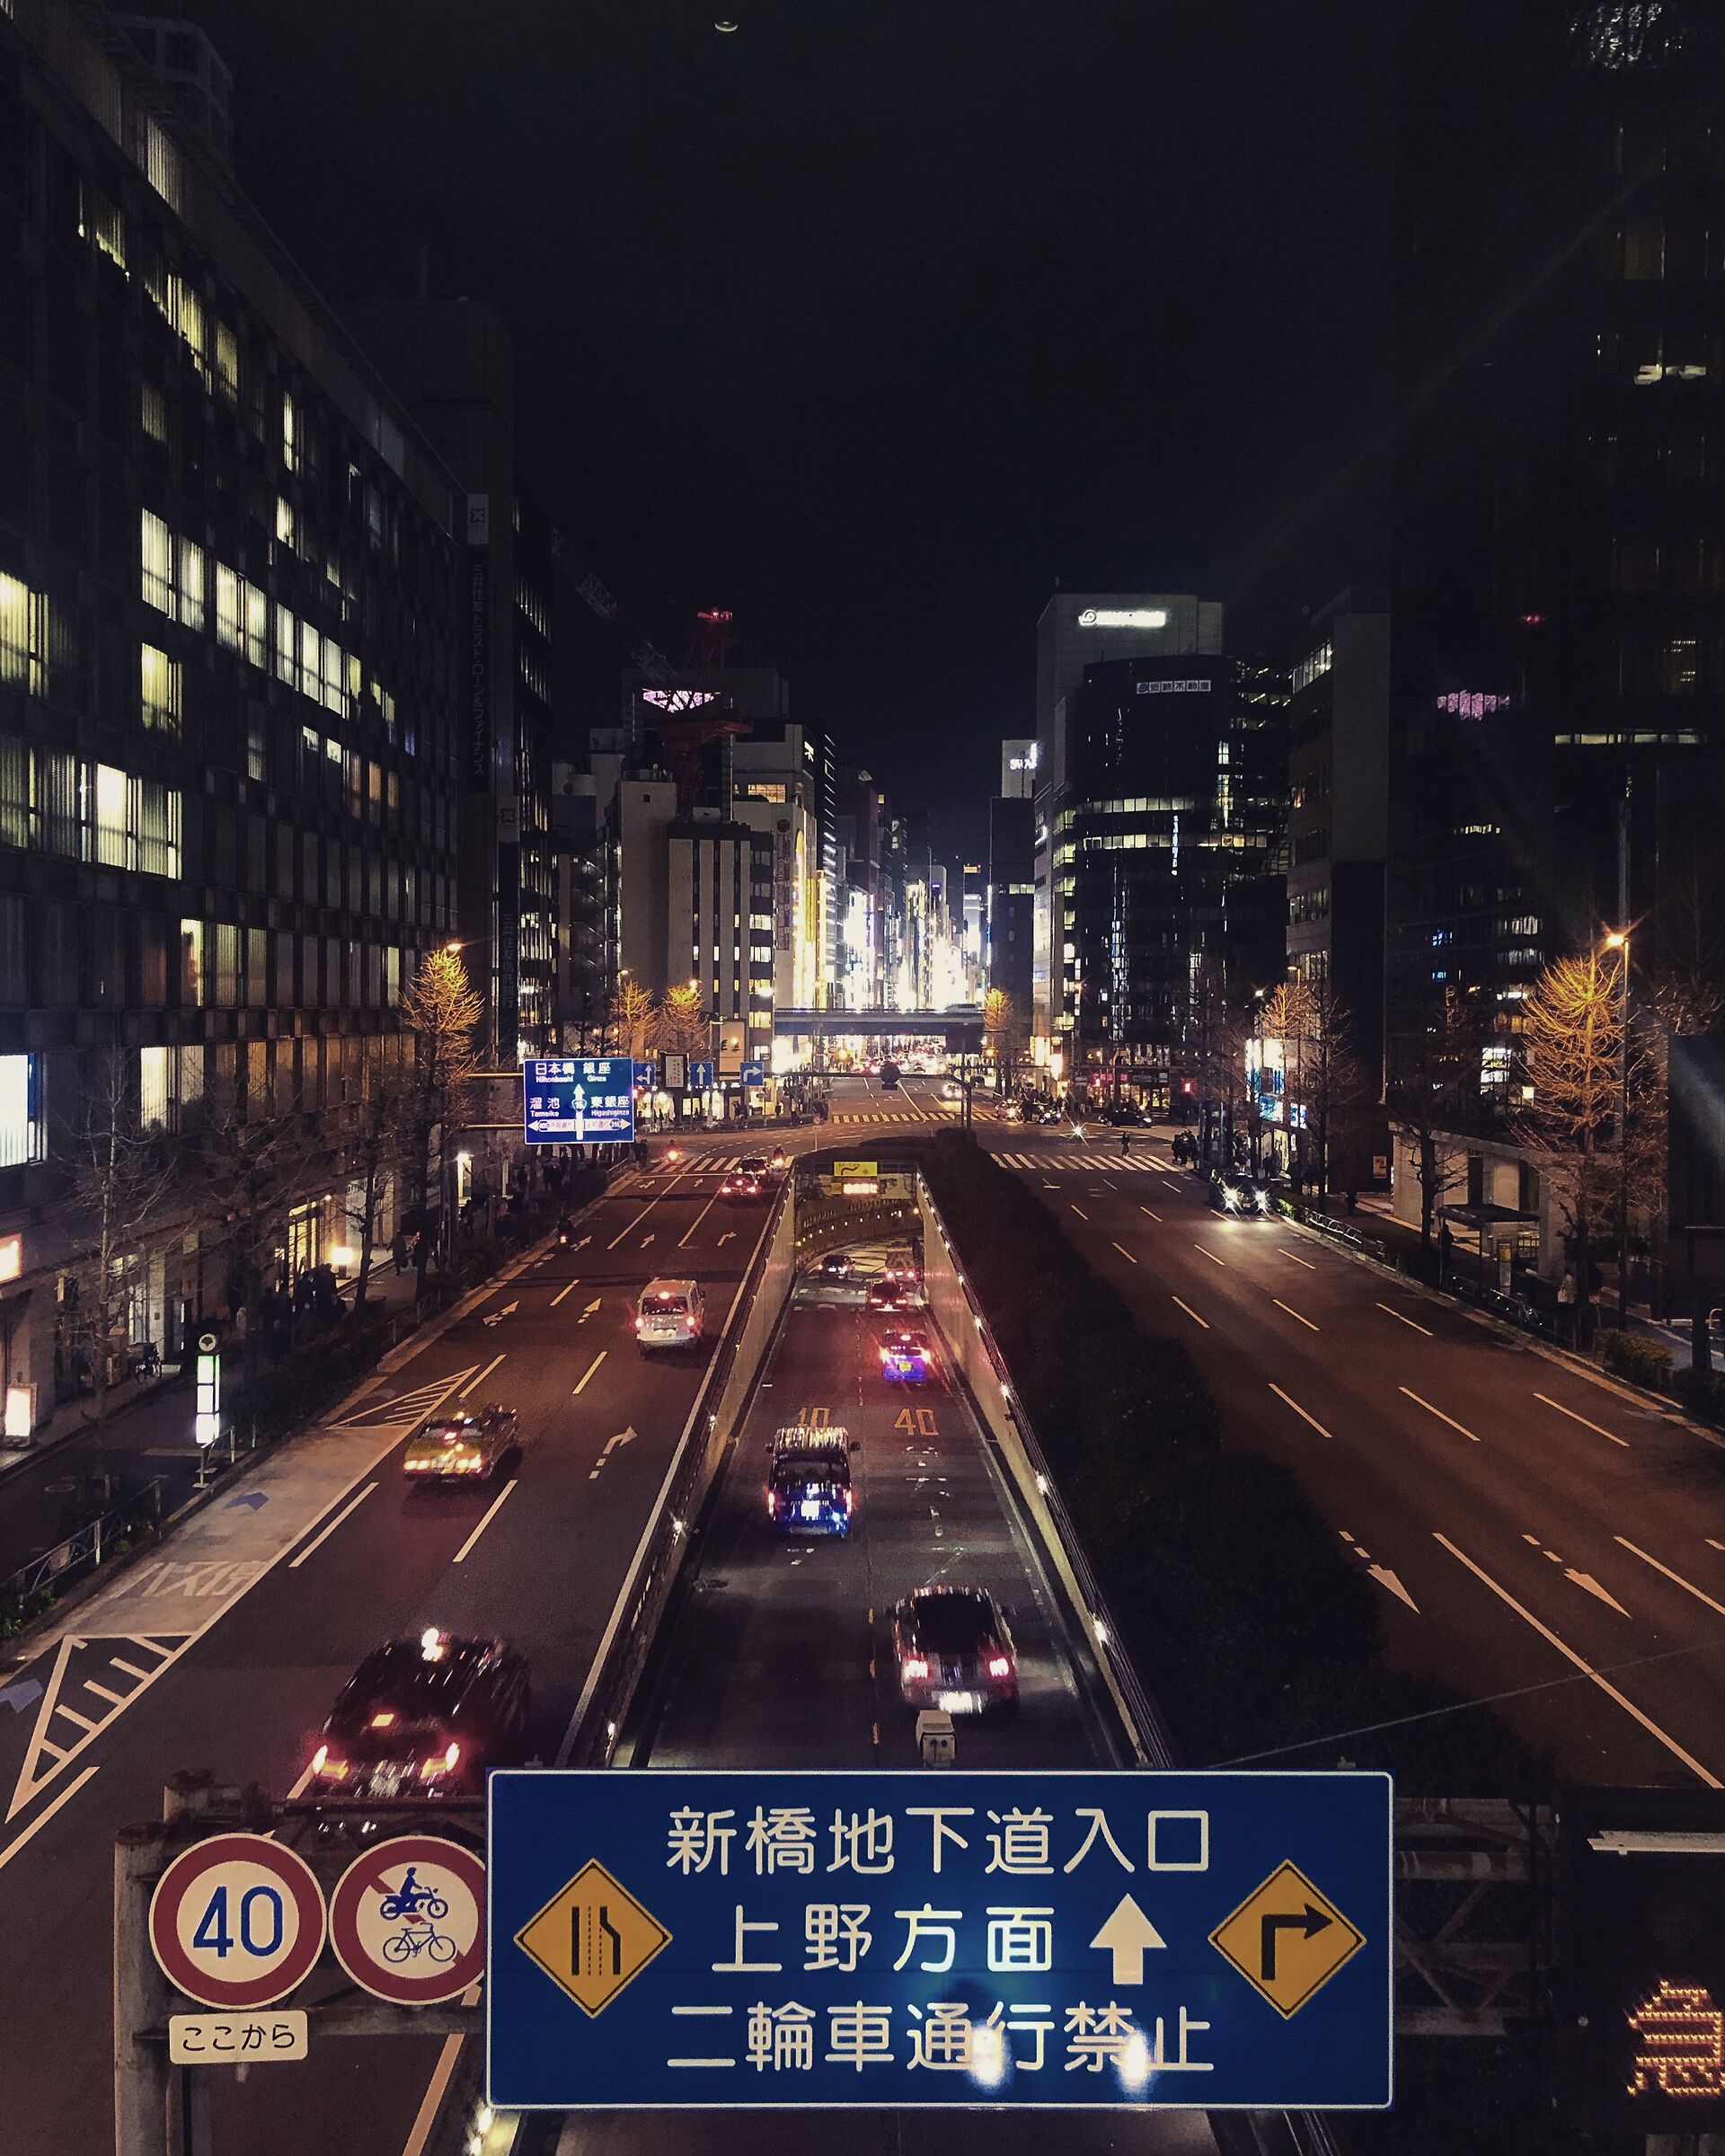 Tokyo by night...